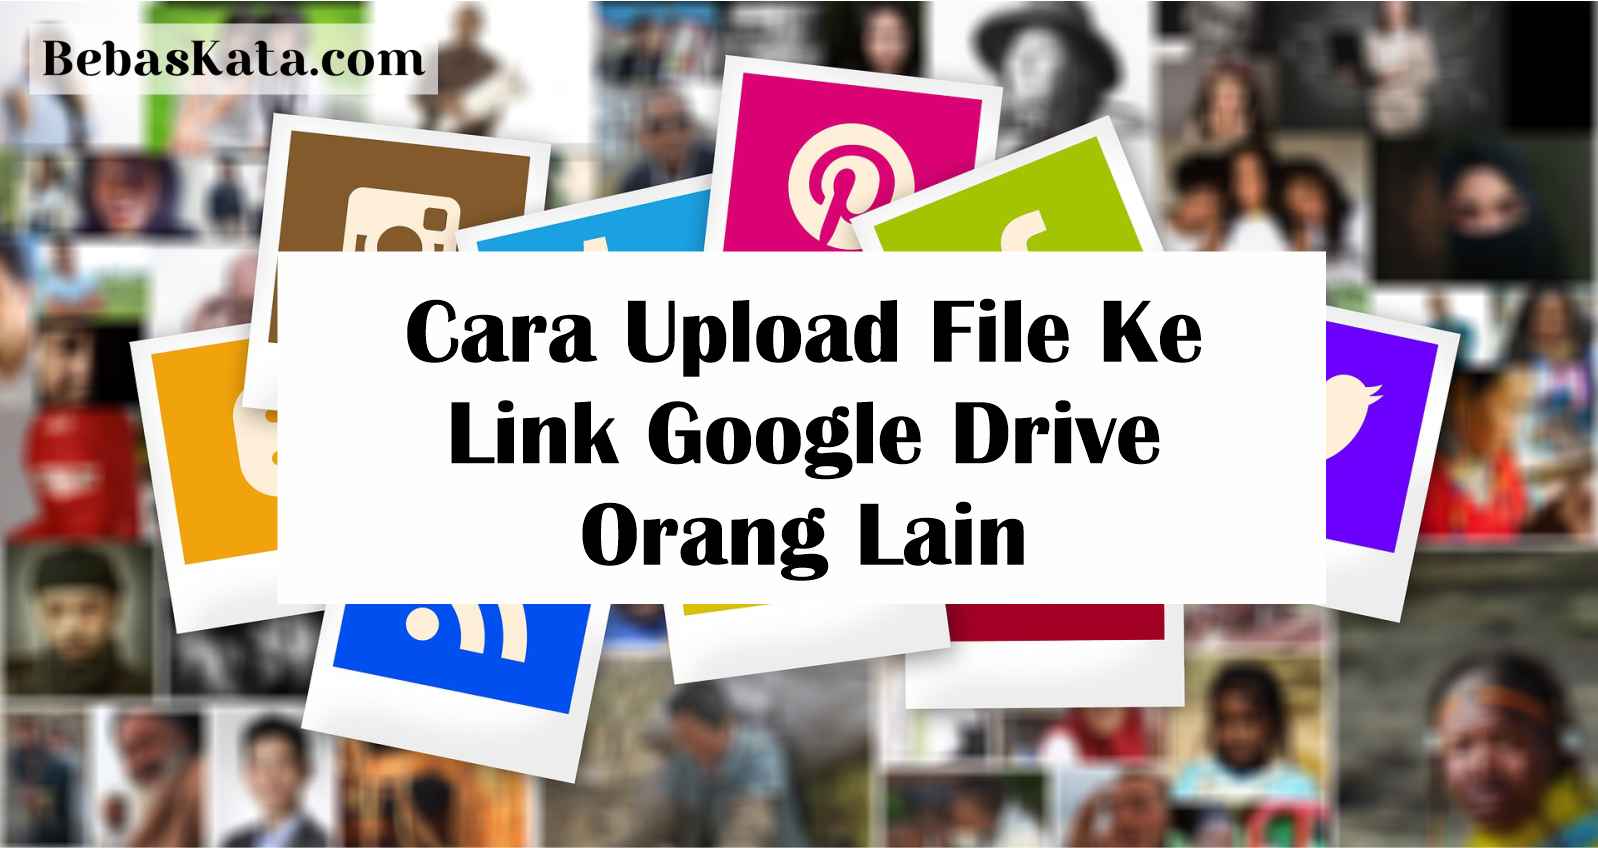 Cara Upload File Ke Link Google Drive Orang Lain